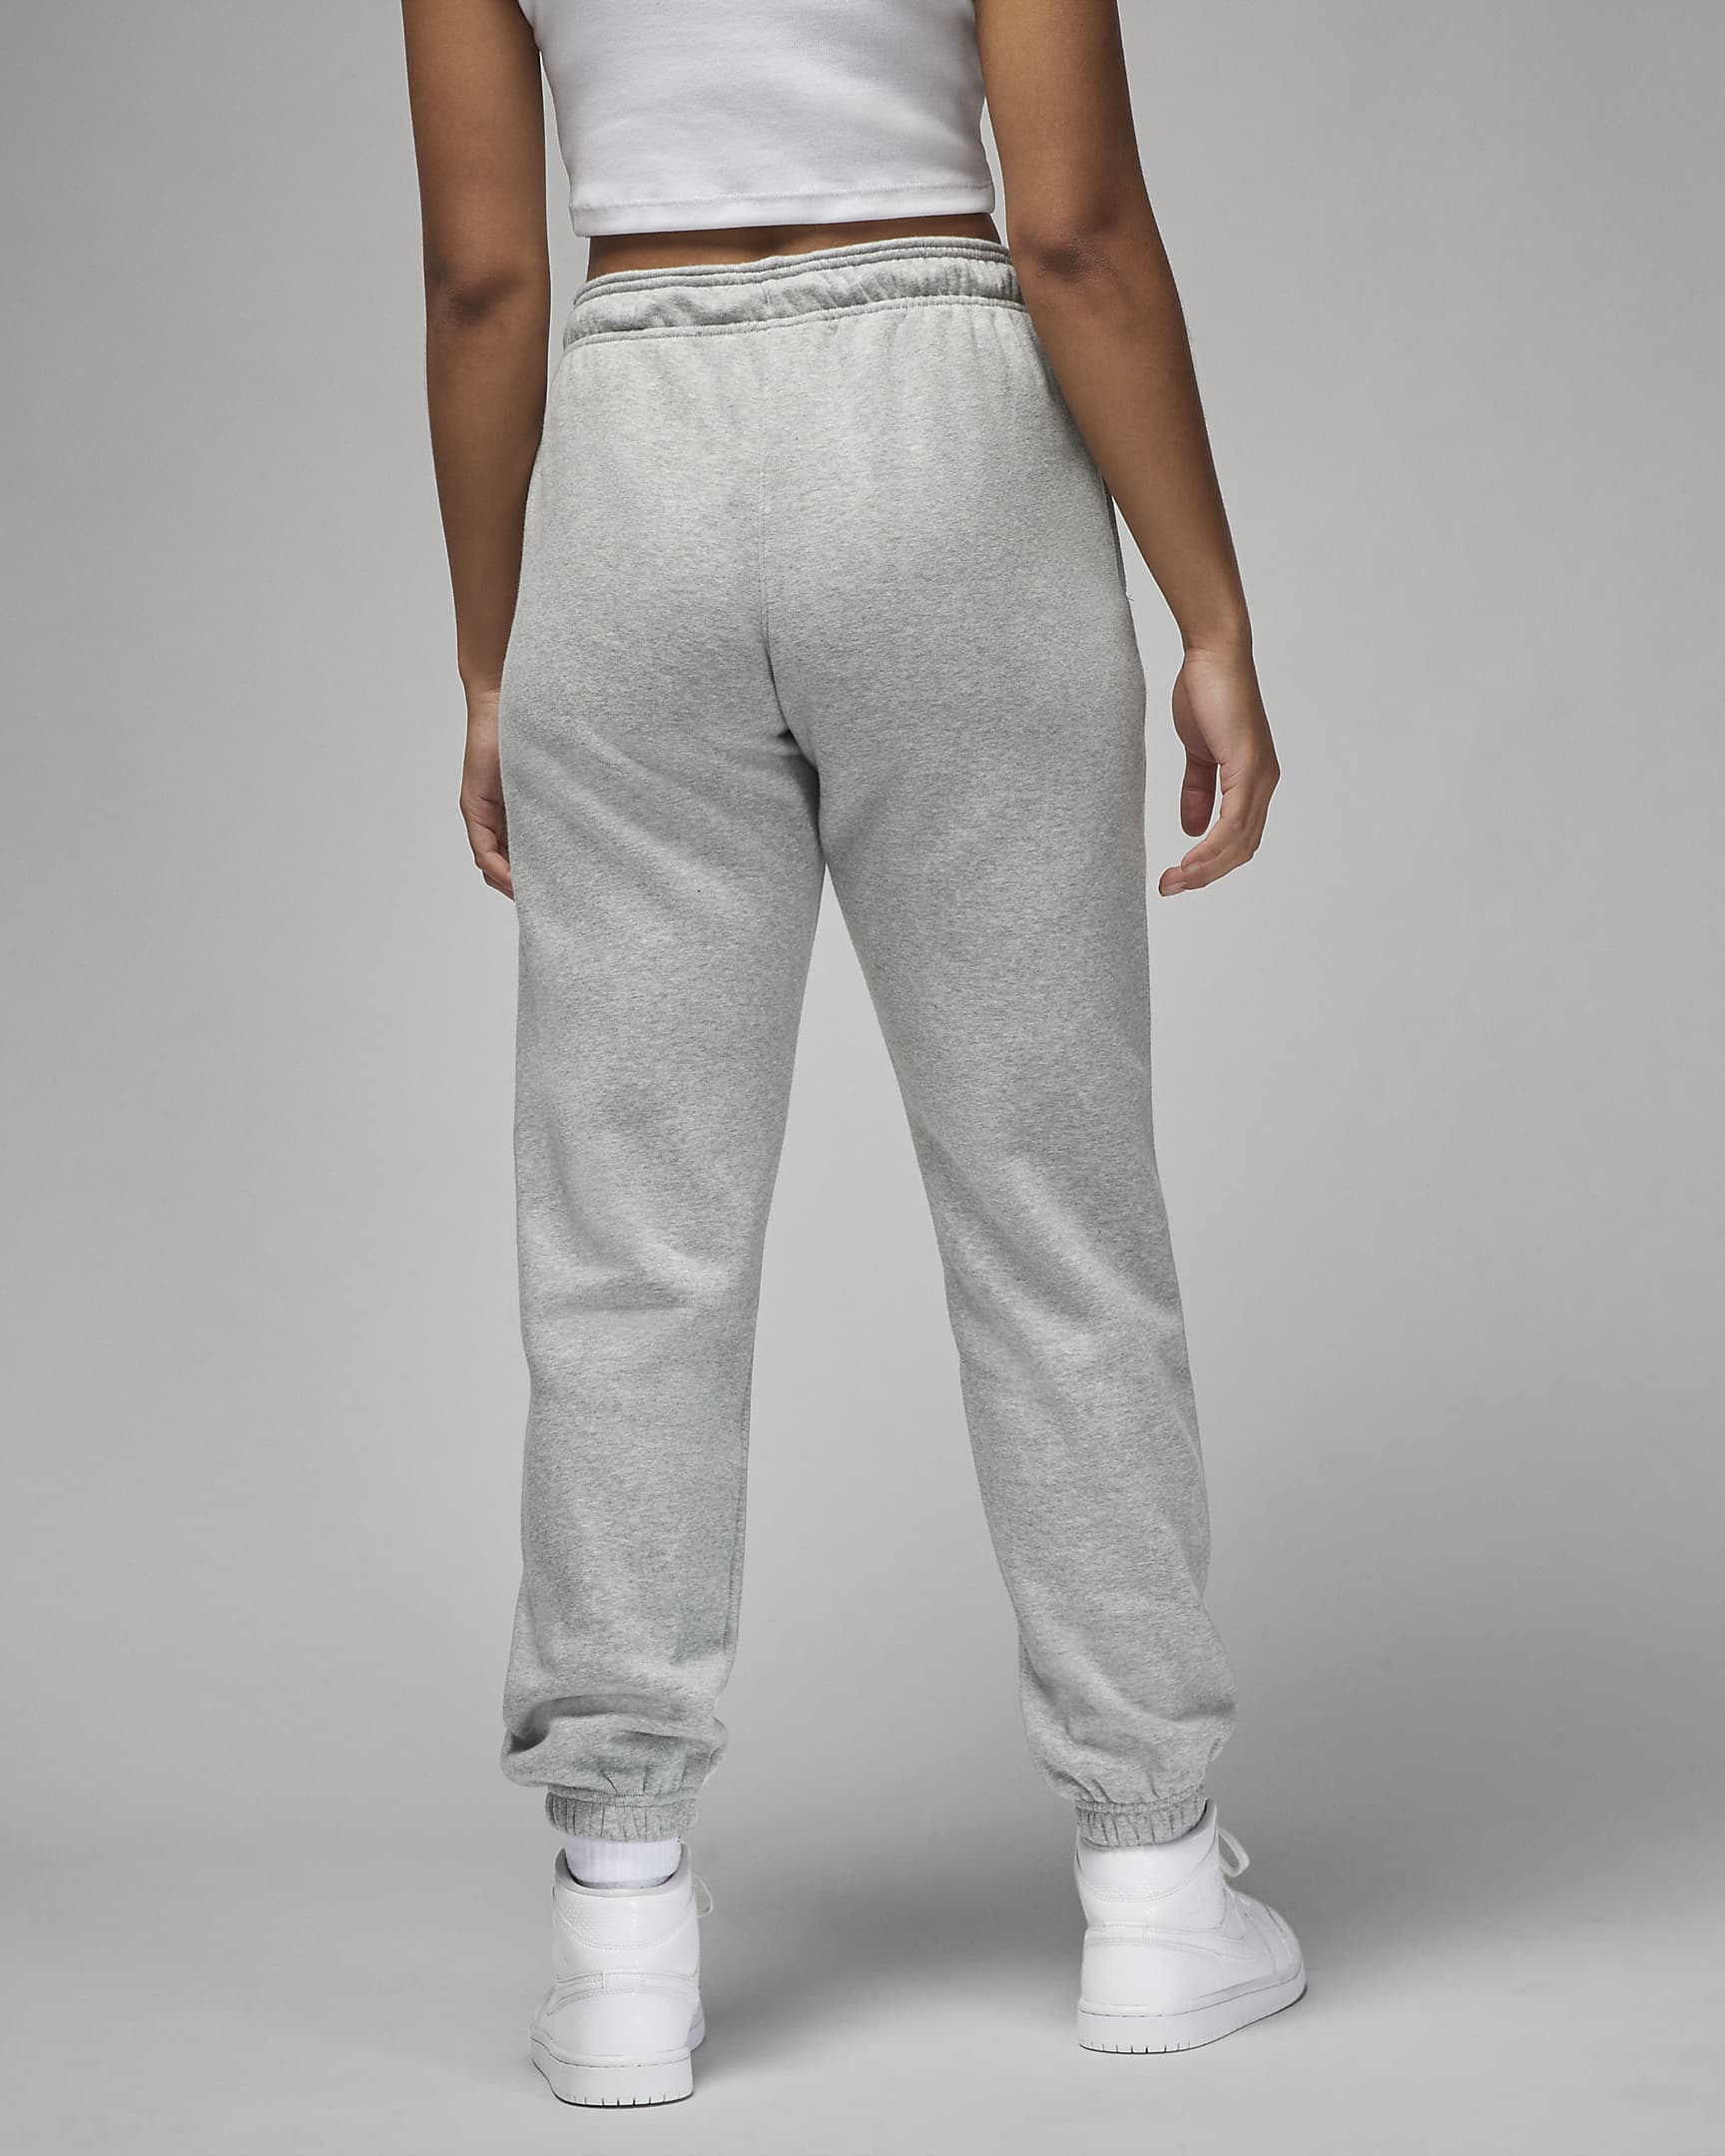 Jordan Brooklyn Fleece Women's Trousers - Dark Grey Heather/White